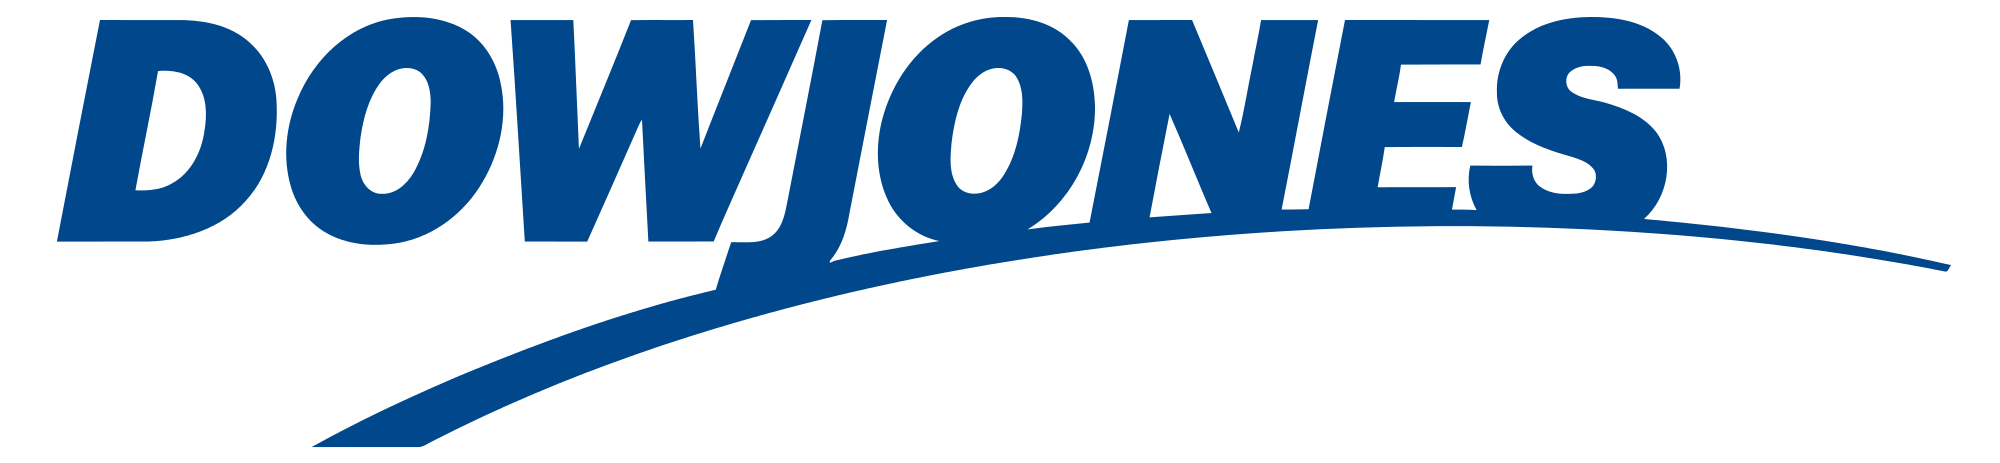 Dow_Jones_logo.svg.png